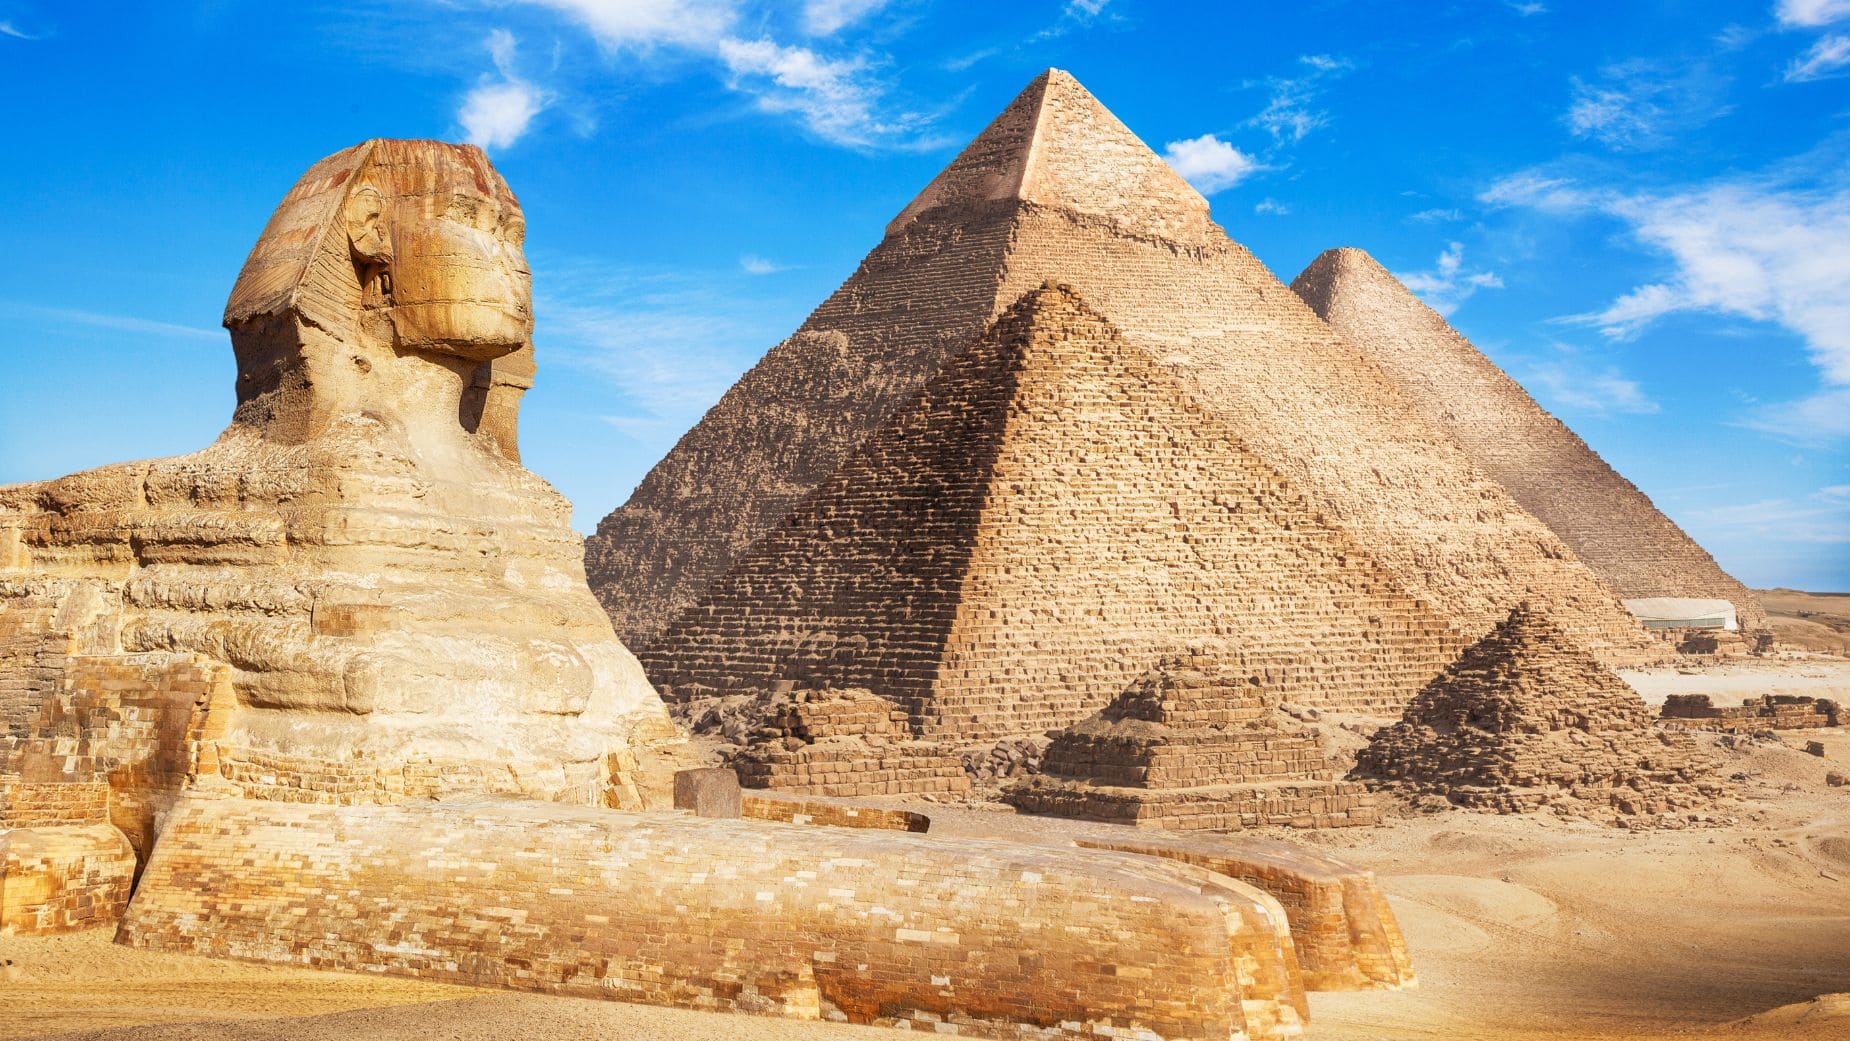 Egipto y sus pirámides aun esconden muchos secretos